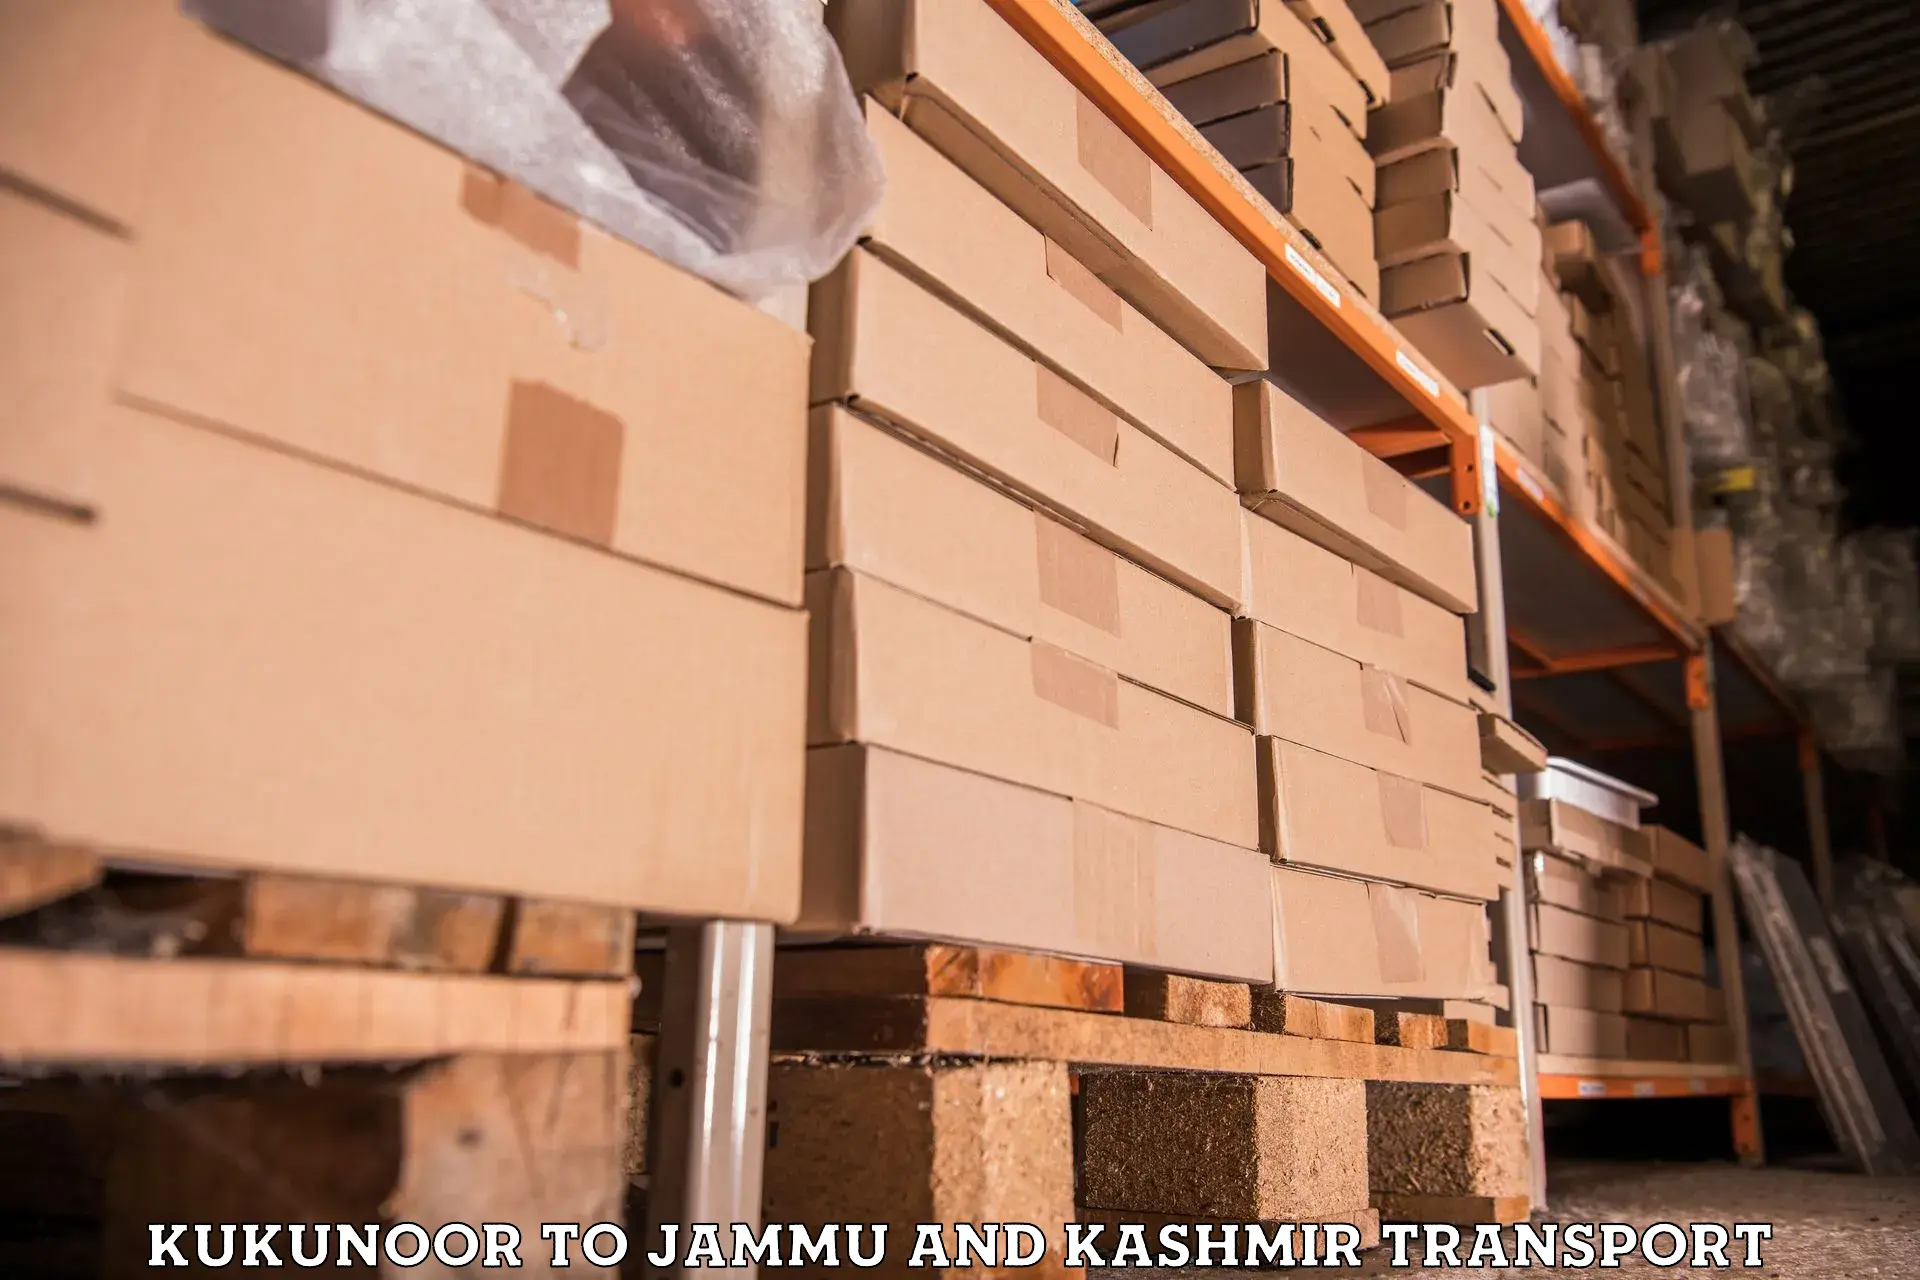 Lorry transport service Kukunoor to Bandipur